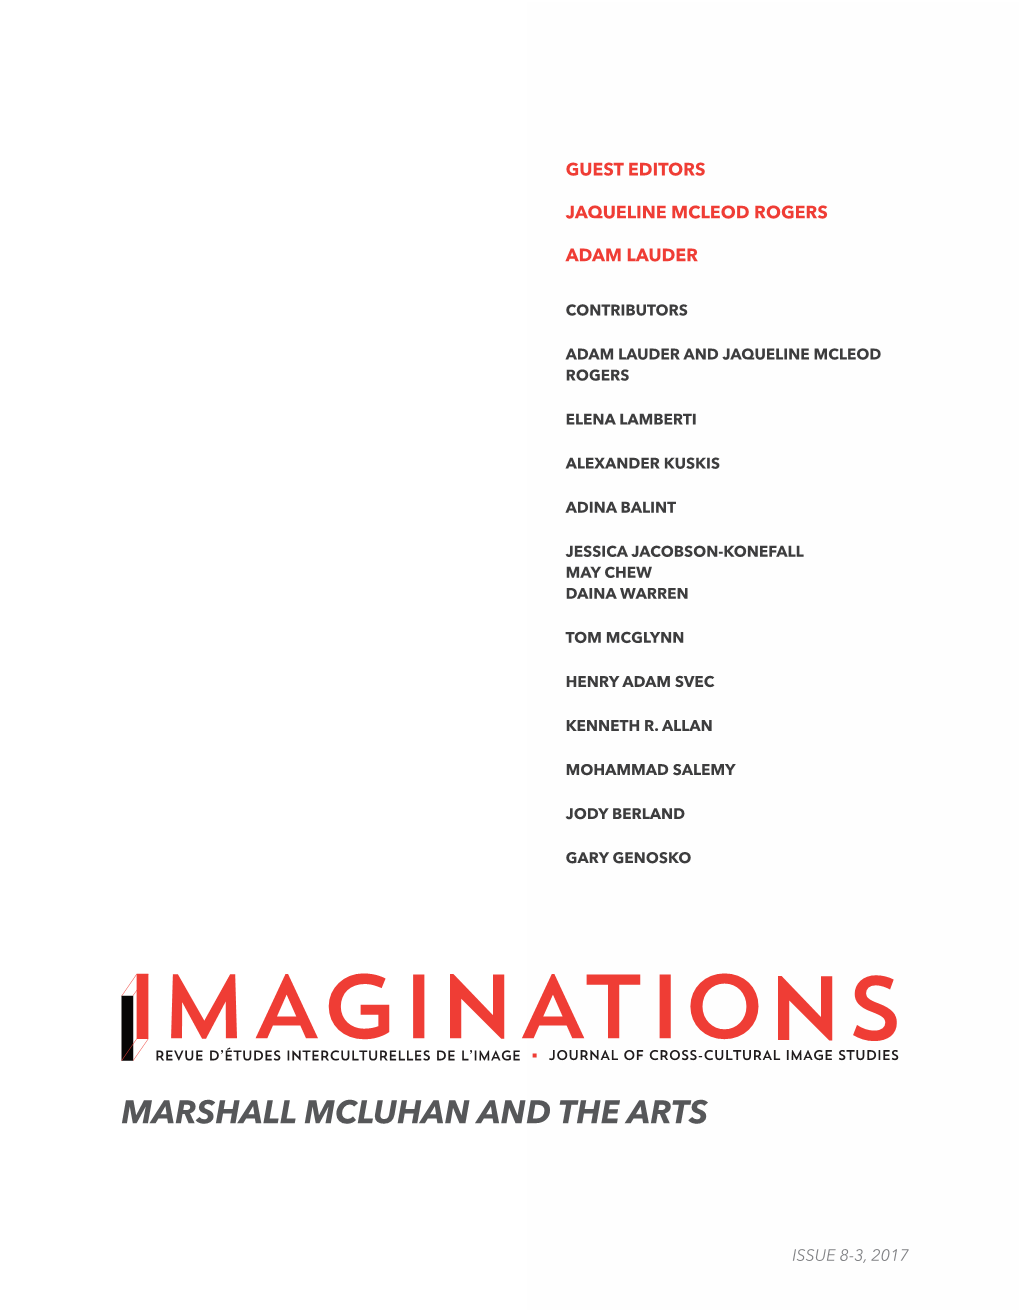 Marshall Mcluhan and the Arts